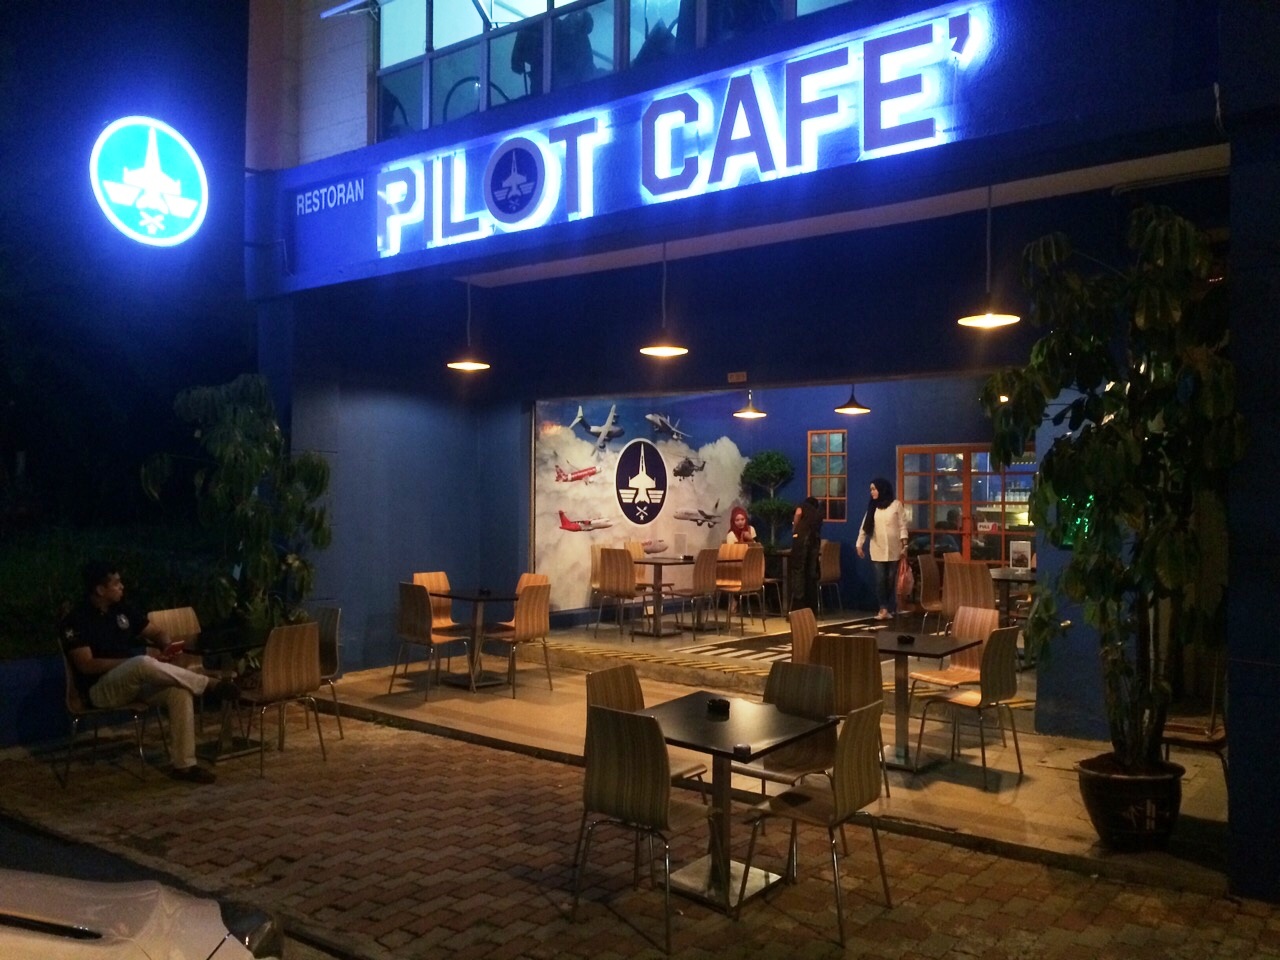 WANDERLUST DJ: Pilot Cafe, Bandar Baru Nilai ~ Let's Fuel-Up!